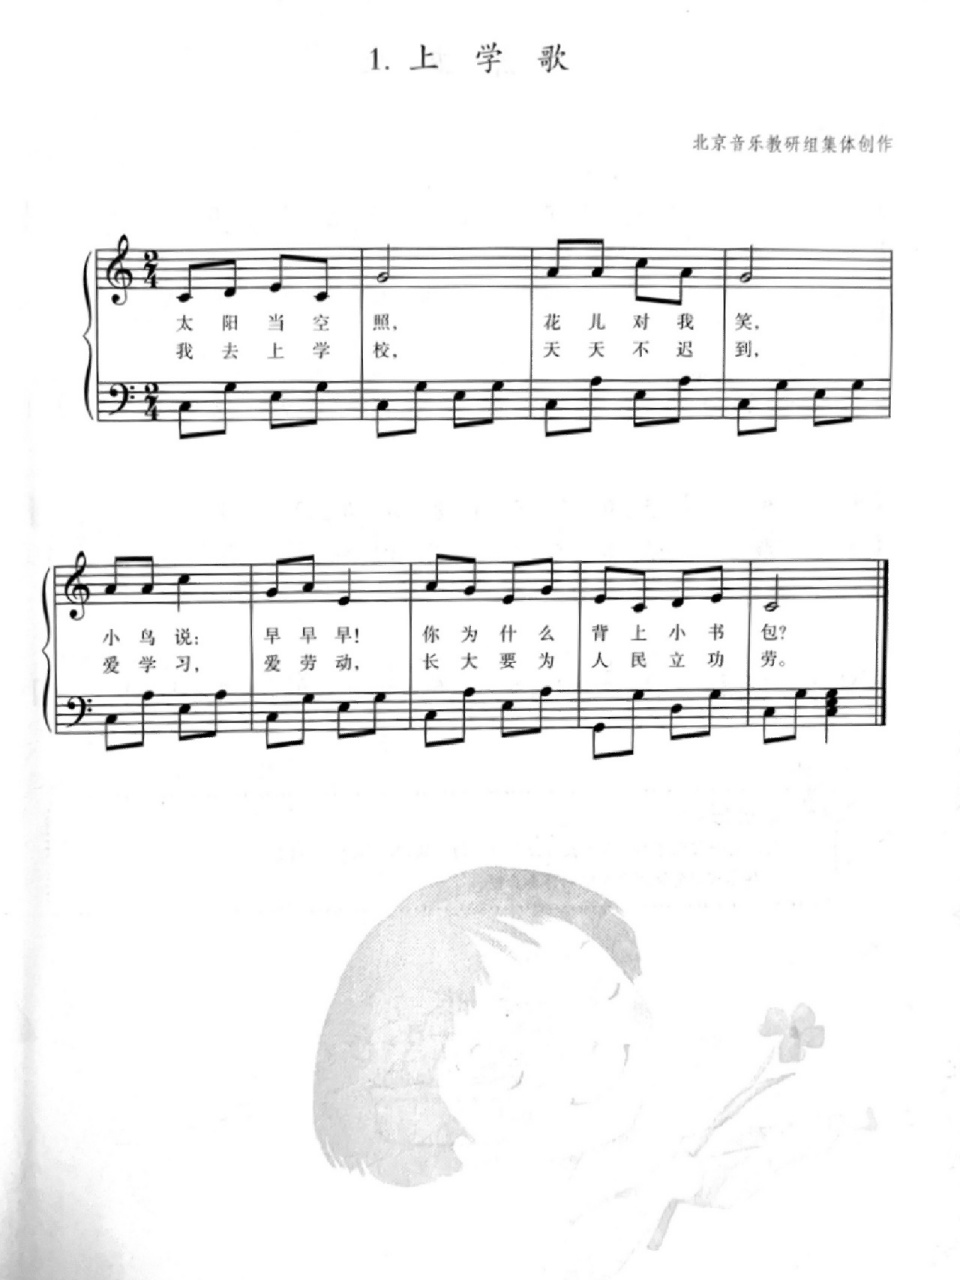 【幼师弹唱技能】《上学歌》简谱带左手伴奏 耳熟能详的一首儿歌谱子